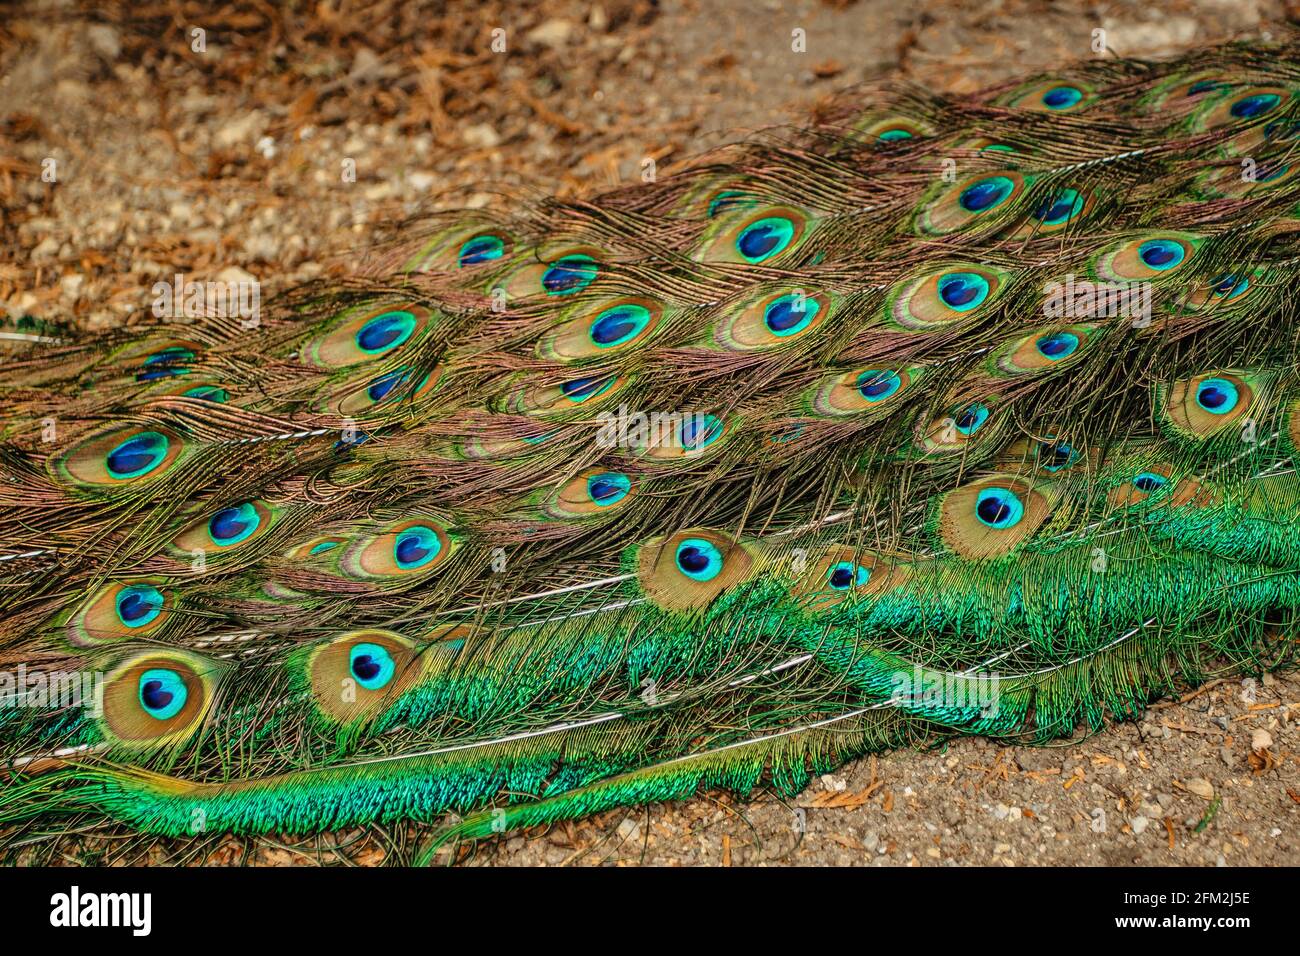 Pfauenfedern aus der Nähe.Blauer indischer Pfau, Pavo cristatus, mit bunt schillerndem Schwanz und blau-grünen metallischen Federn.Ornamental exotischer Vogel. Stockfoto